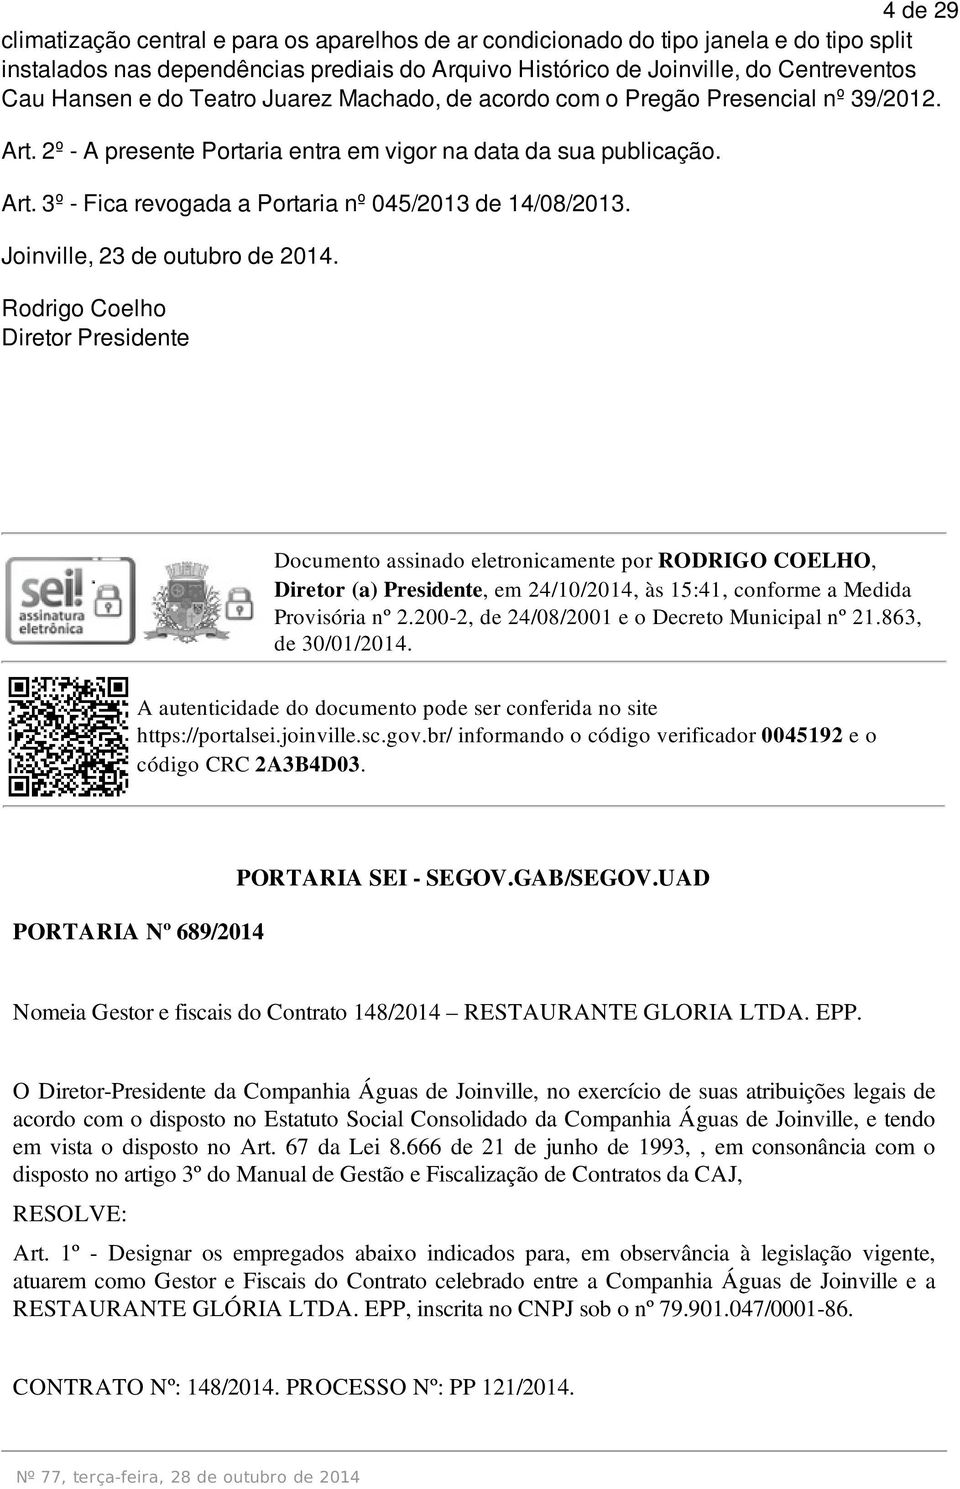 Joinville, 23 de outubro de 2014. Rodrigo Coelho Documento assinado eletronicamente por RODRIGO COELHO, Diretor (a) Presidente, em 24/10/2014, às 15:41, conforme a Medida https://portalsei.joinville.